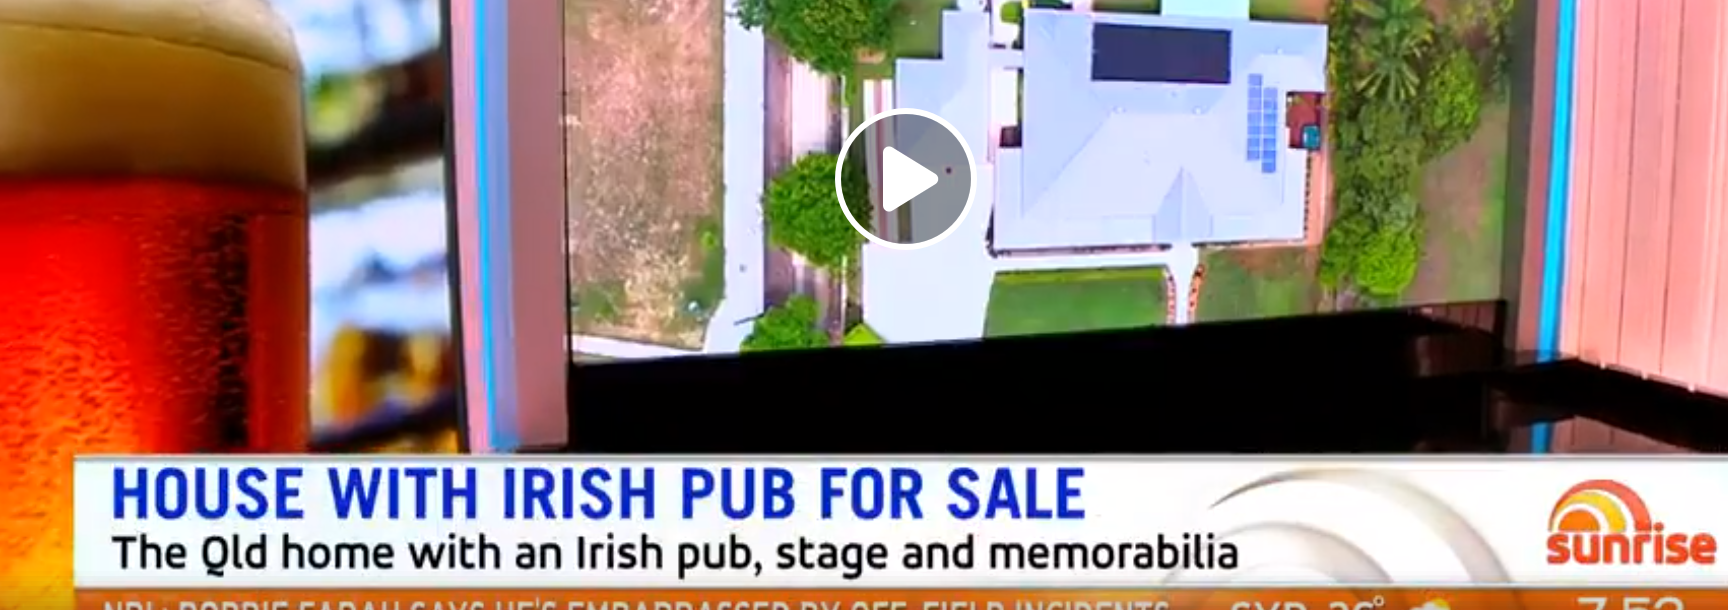 Irish Pub For Sale in Queensland